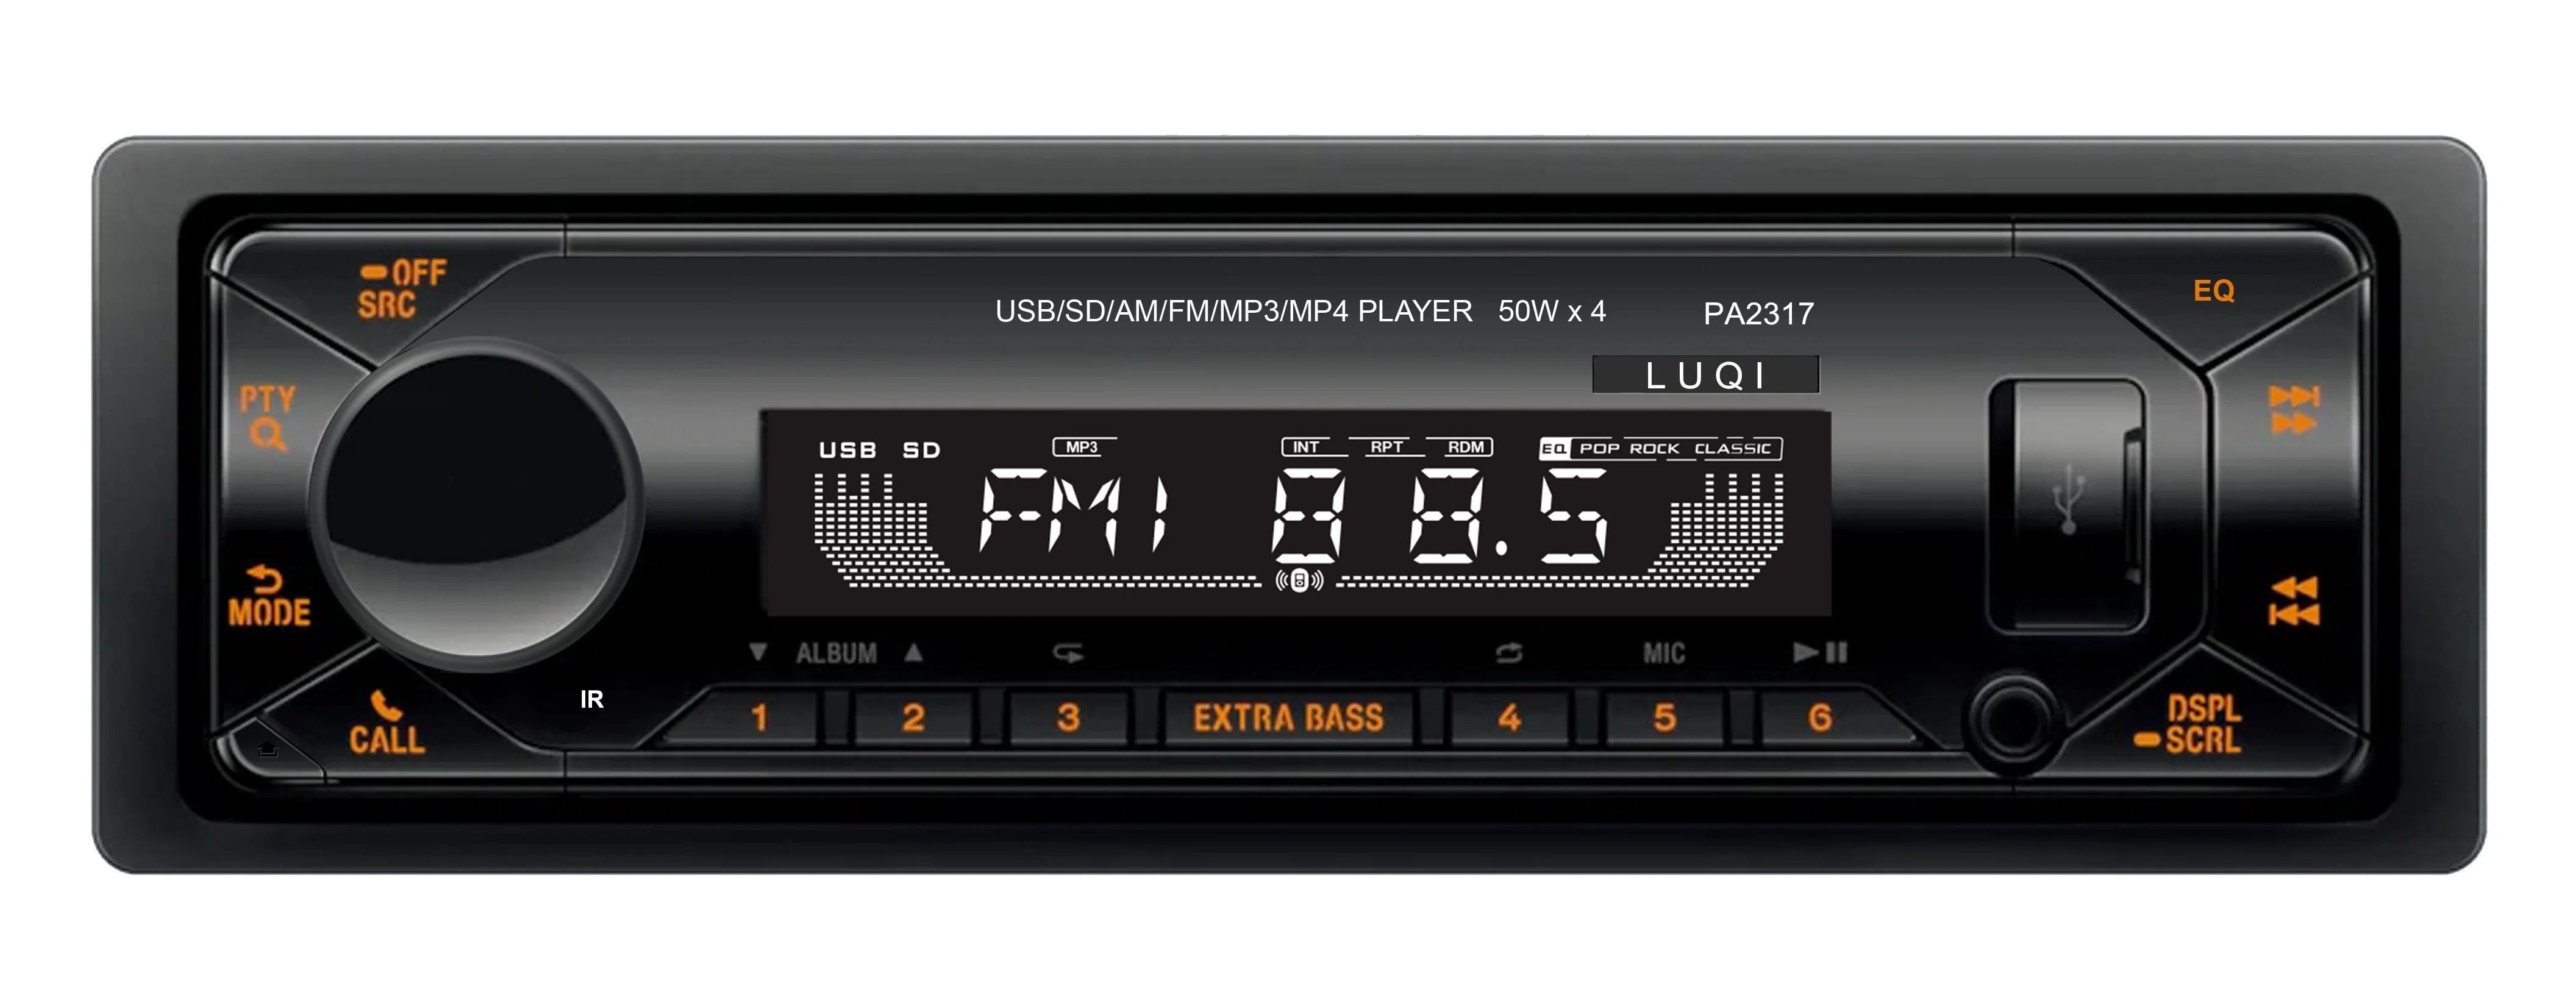 Бытовая электроника автомобильных мультимедиа в формате MP3-плеер с RoHS сертификации